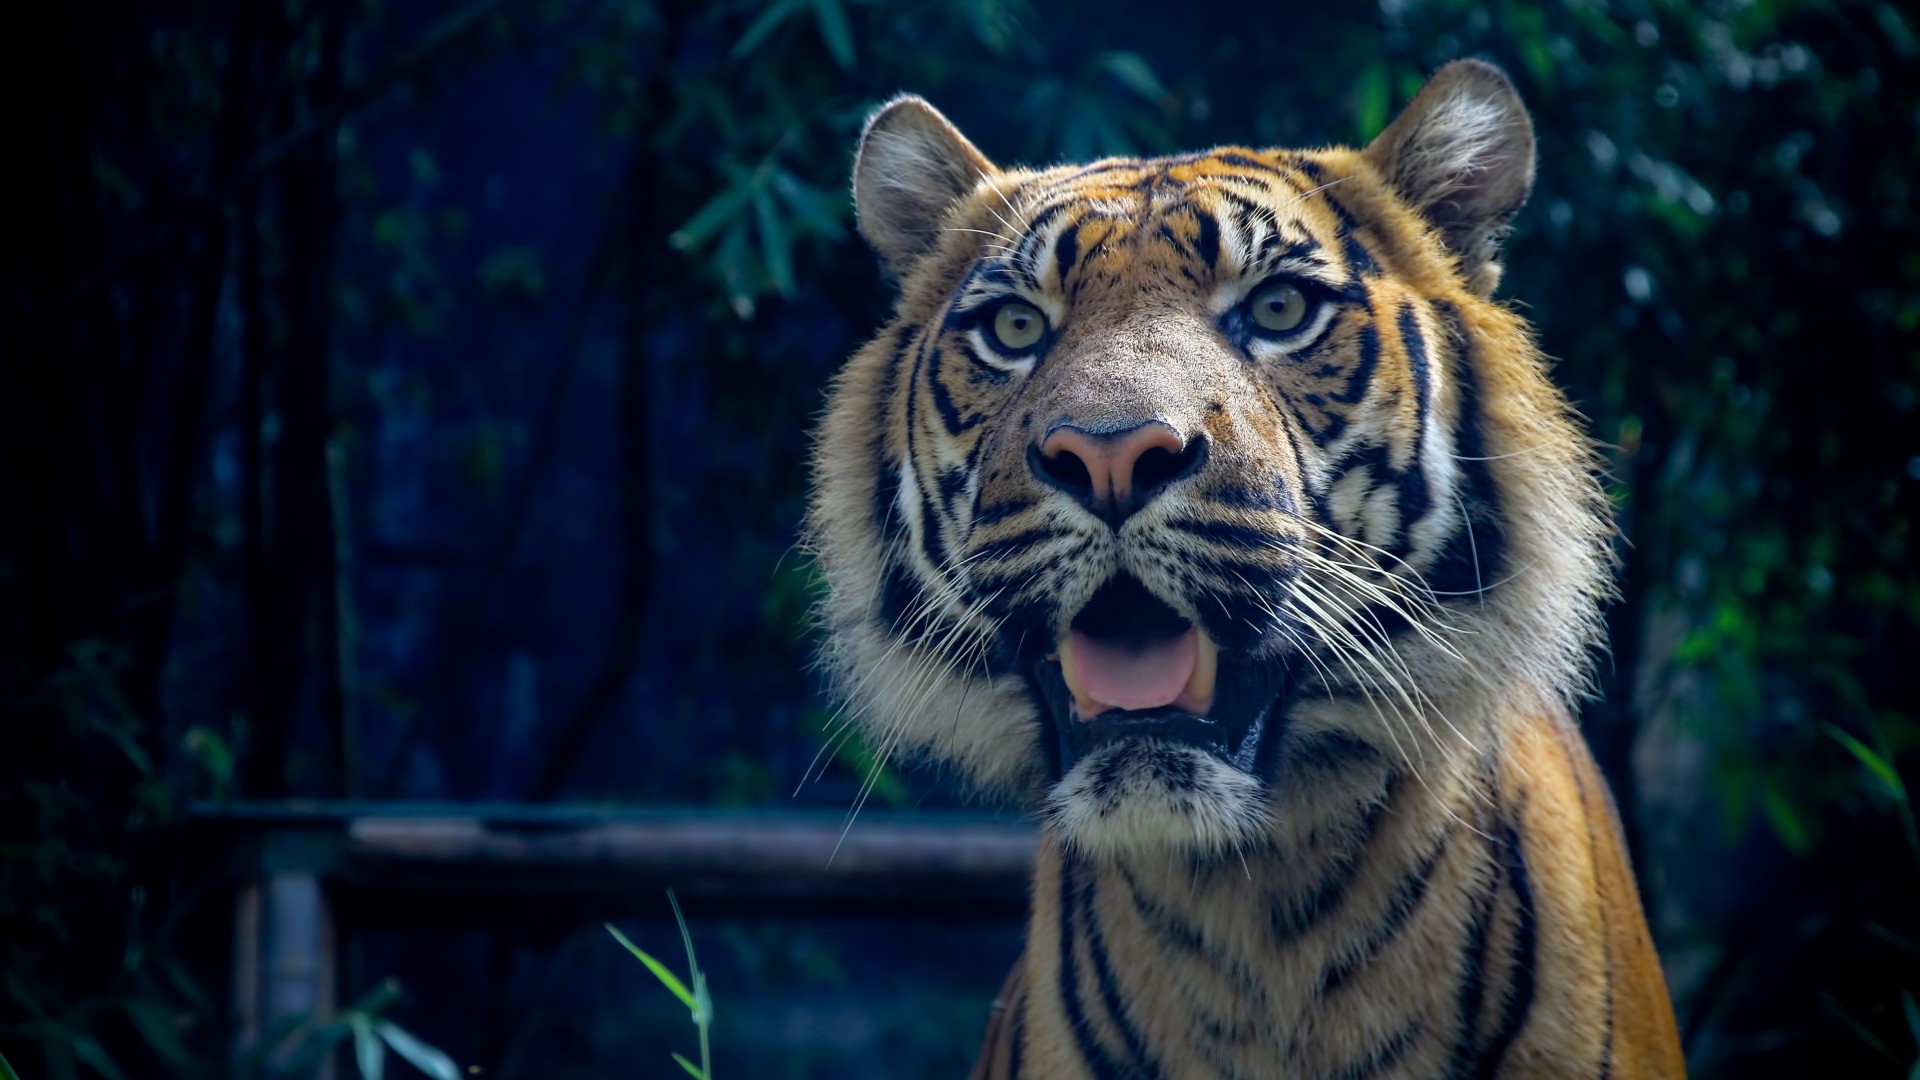 Tiger, 4k, HD wallpaper, Sumatran, amazing eyes, fur, look (horizontal)